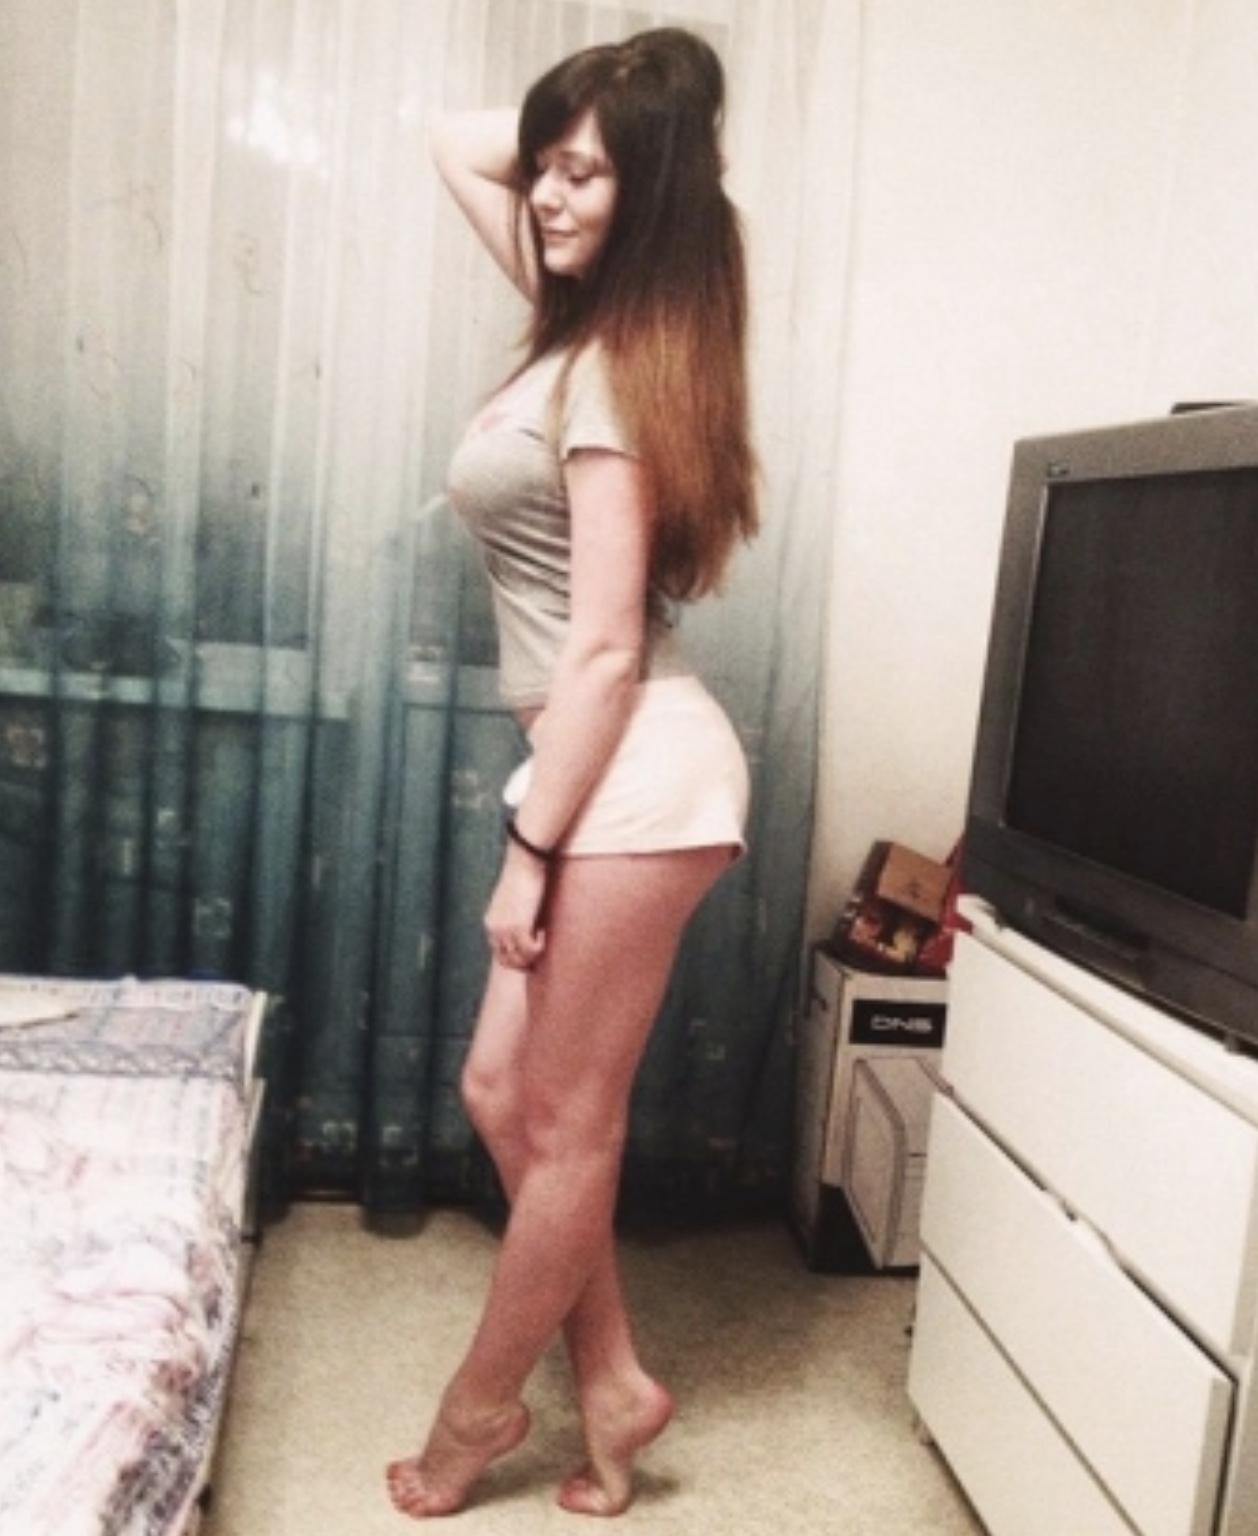 Проститутка Карина, фото 1, тел: 0731298741. В центре города - Киев